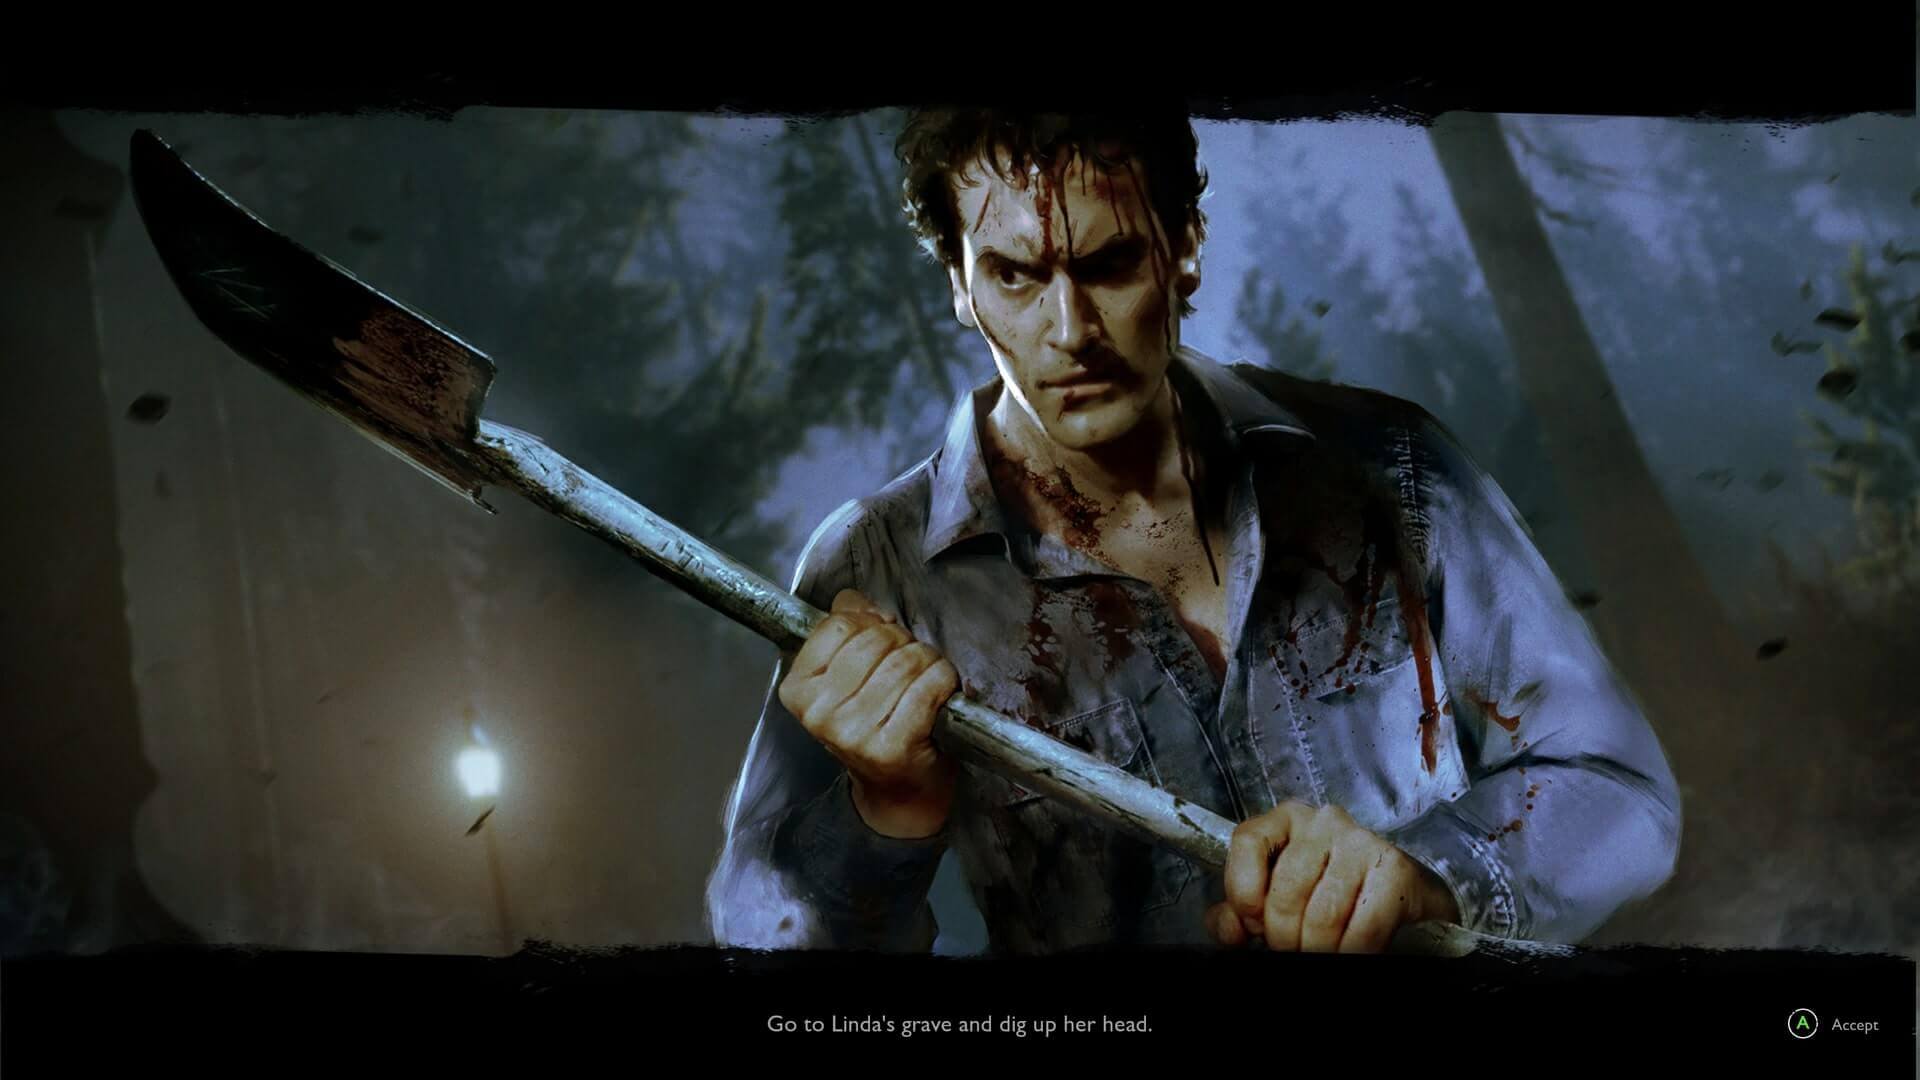 Impressões Evil Dead The Game: multiplayer com pouco conteúdo - Delfos